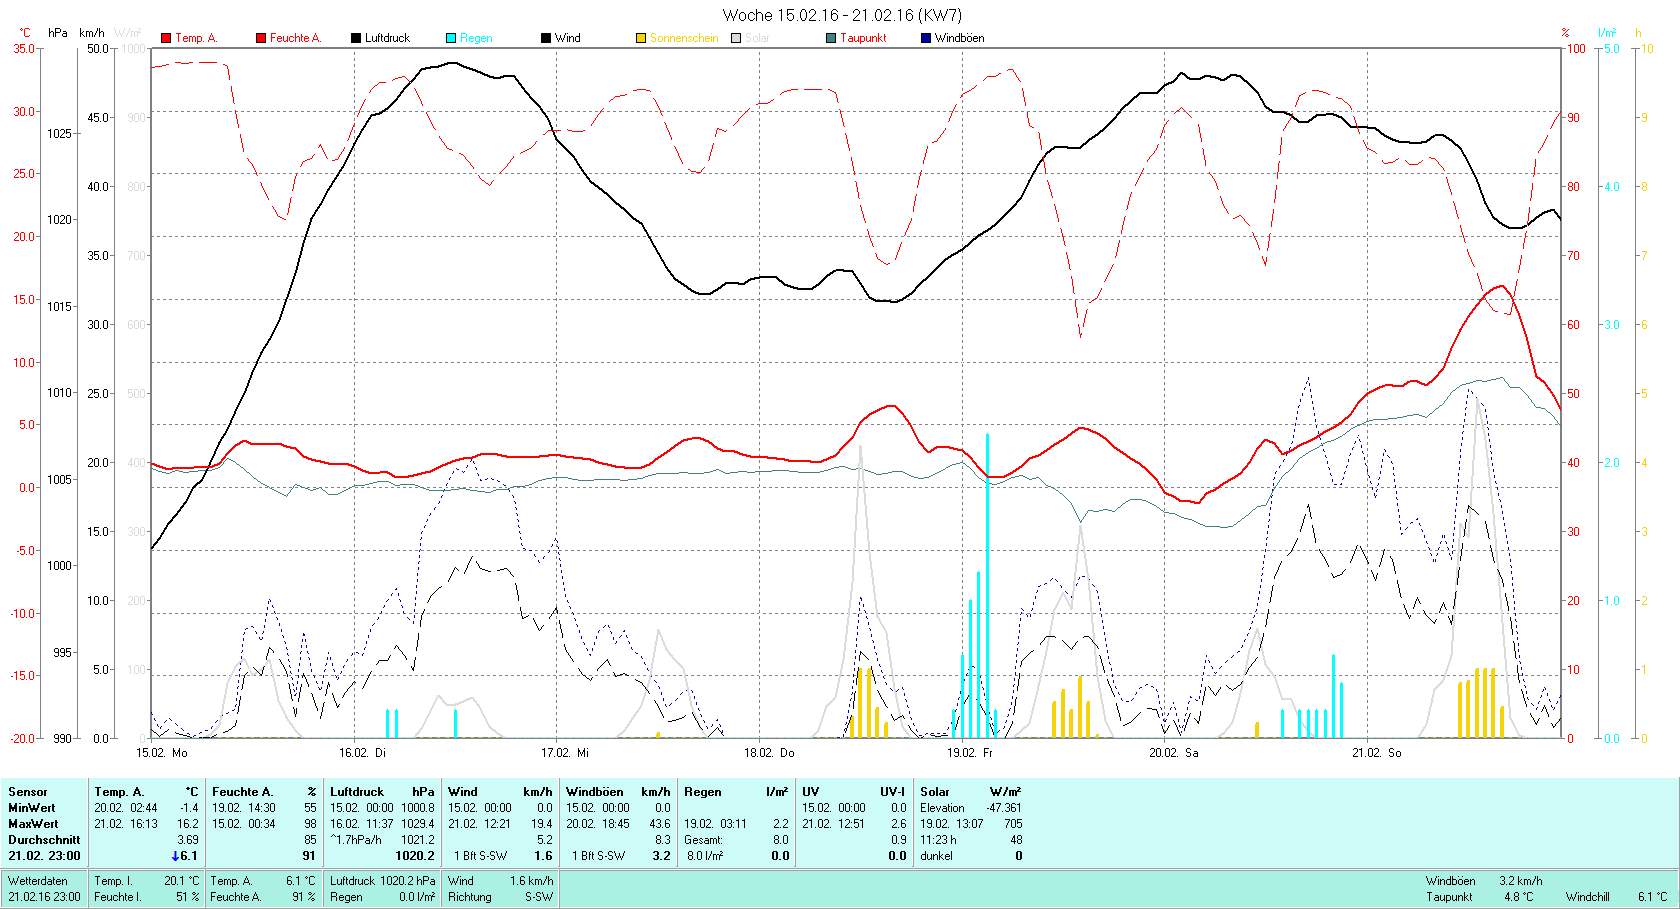 KW 7 Tmin -1.4°C, Tmax 16.2°C, Sonne 11:23h, Niederschlag 8.0mm/2